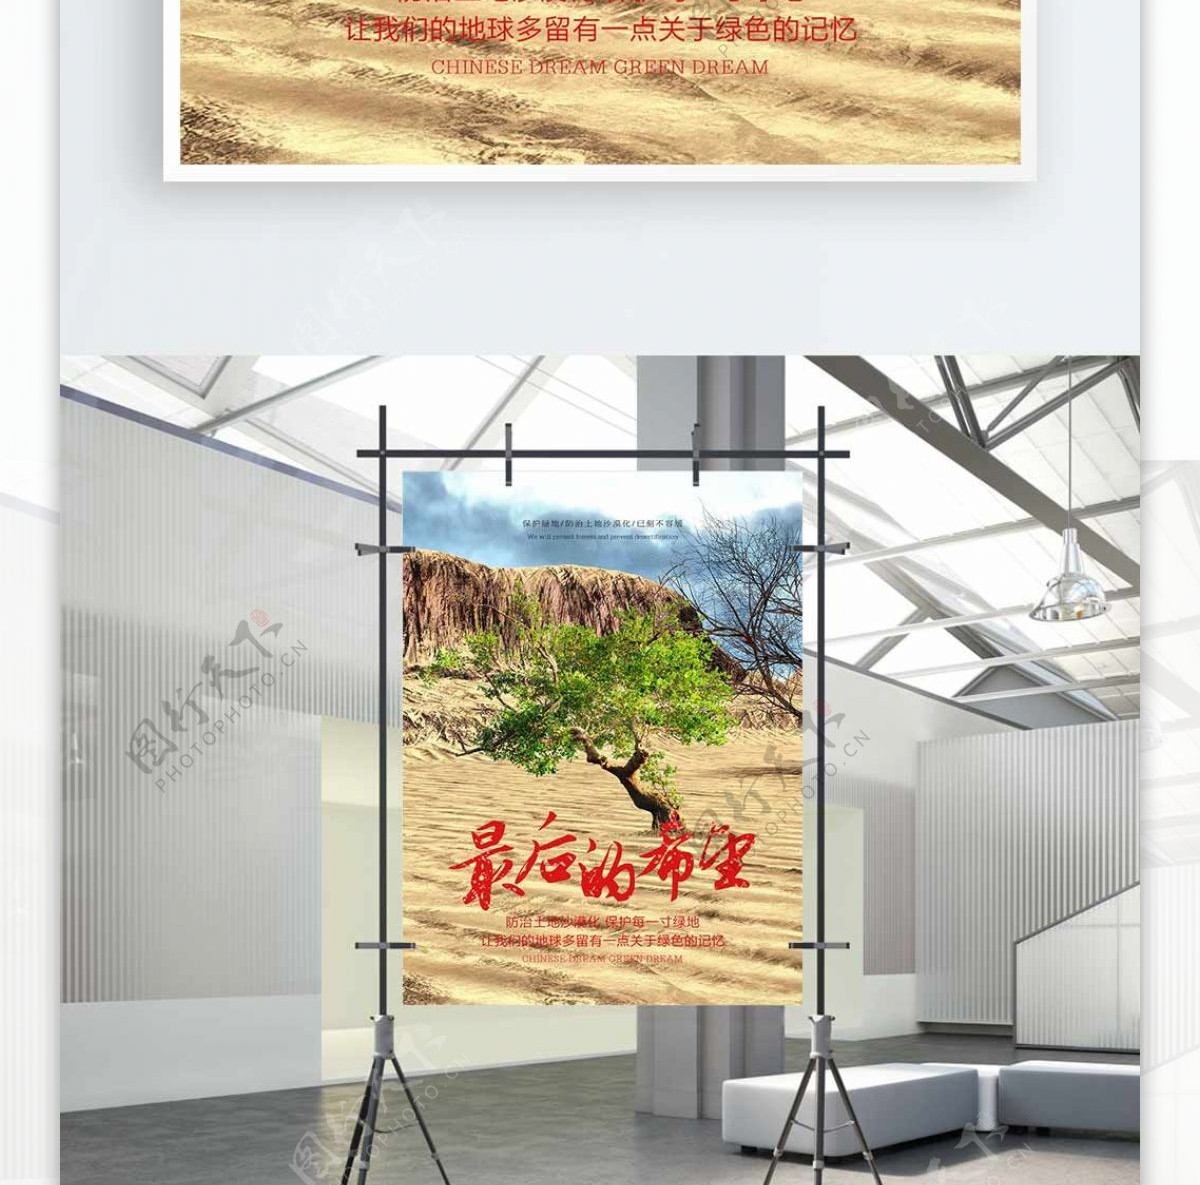 创意合成最后的希望防治沙漠化公益宣传海报